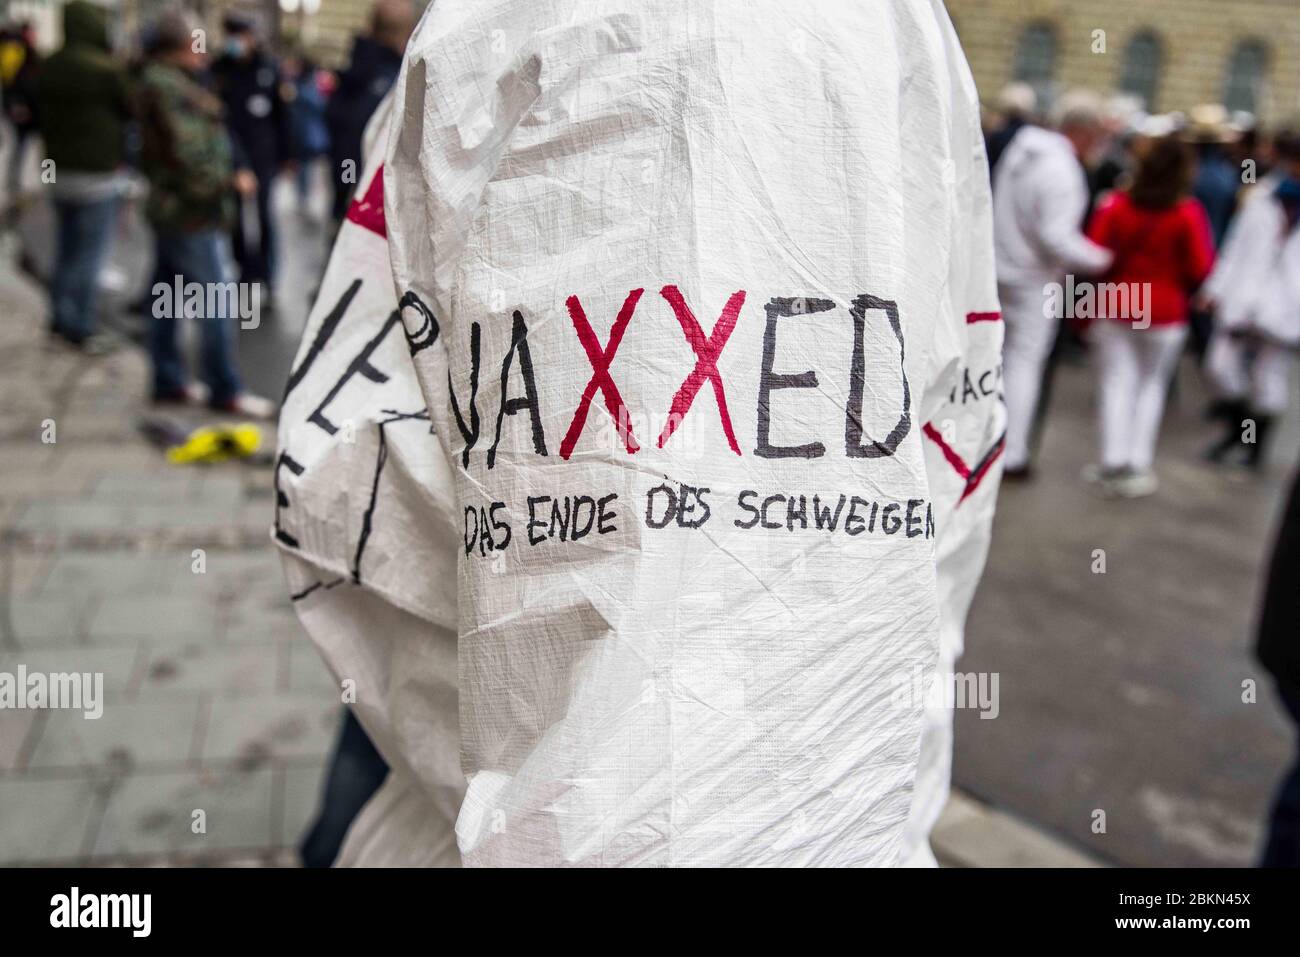 2 mai 2020, Munich, Bavière, Allemagne: Le logo de Vaxxed, un film de conspiration d'Andrew Wakefield qui a été crédité de la création d'un mouvement qui croit que le vaccin RRO a causé l'autisme. Après une violente attaque contre les journalistes de la ZDF à Berlin, les Hygienedemos de Munich ont eu lieu à nouveau, avec des théoriciens du complot, des extrémistes de droite, des néonazis, des hooligans, des membres de l'AfD, des insultes et des agressions à l'égard des journalistes et de la police, et des violations des lois de protection contre les infections. Organisés en chats télégrammes par des groupes de conspirateurs â€œQuerfrontâ€ (cross-front), les organisateurs ont planifié seve Banque D'Images